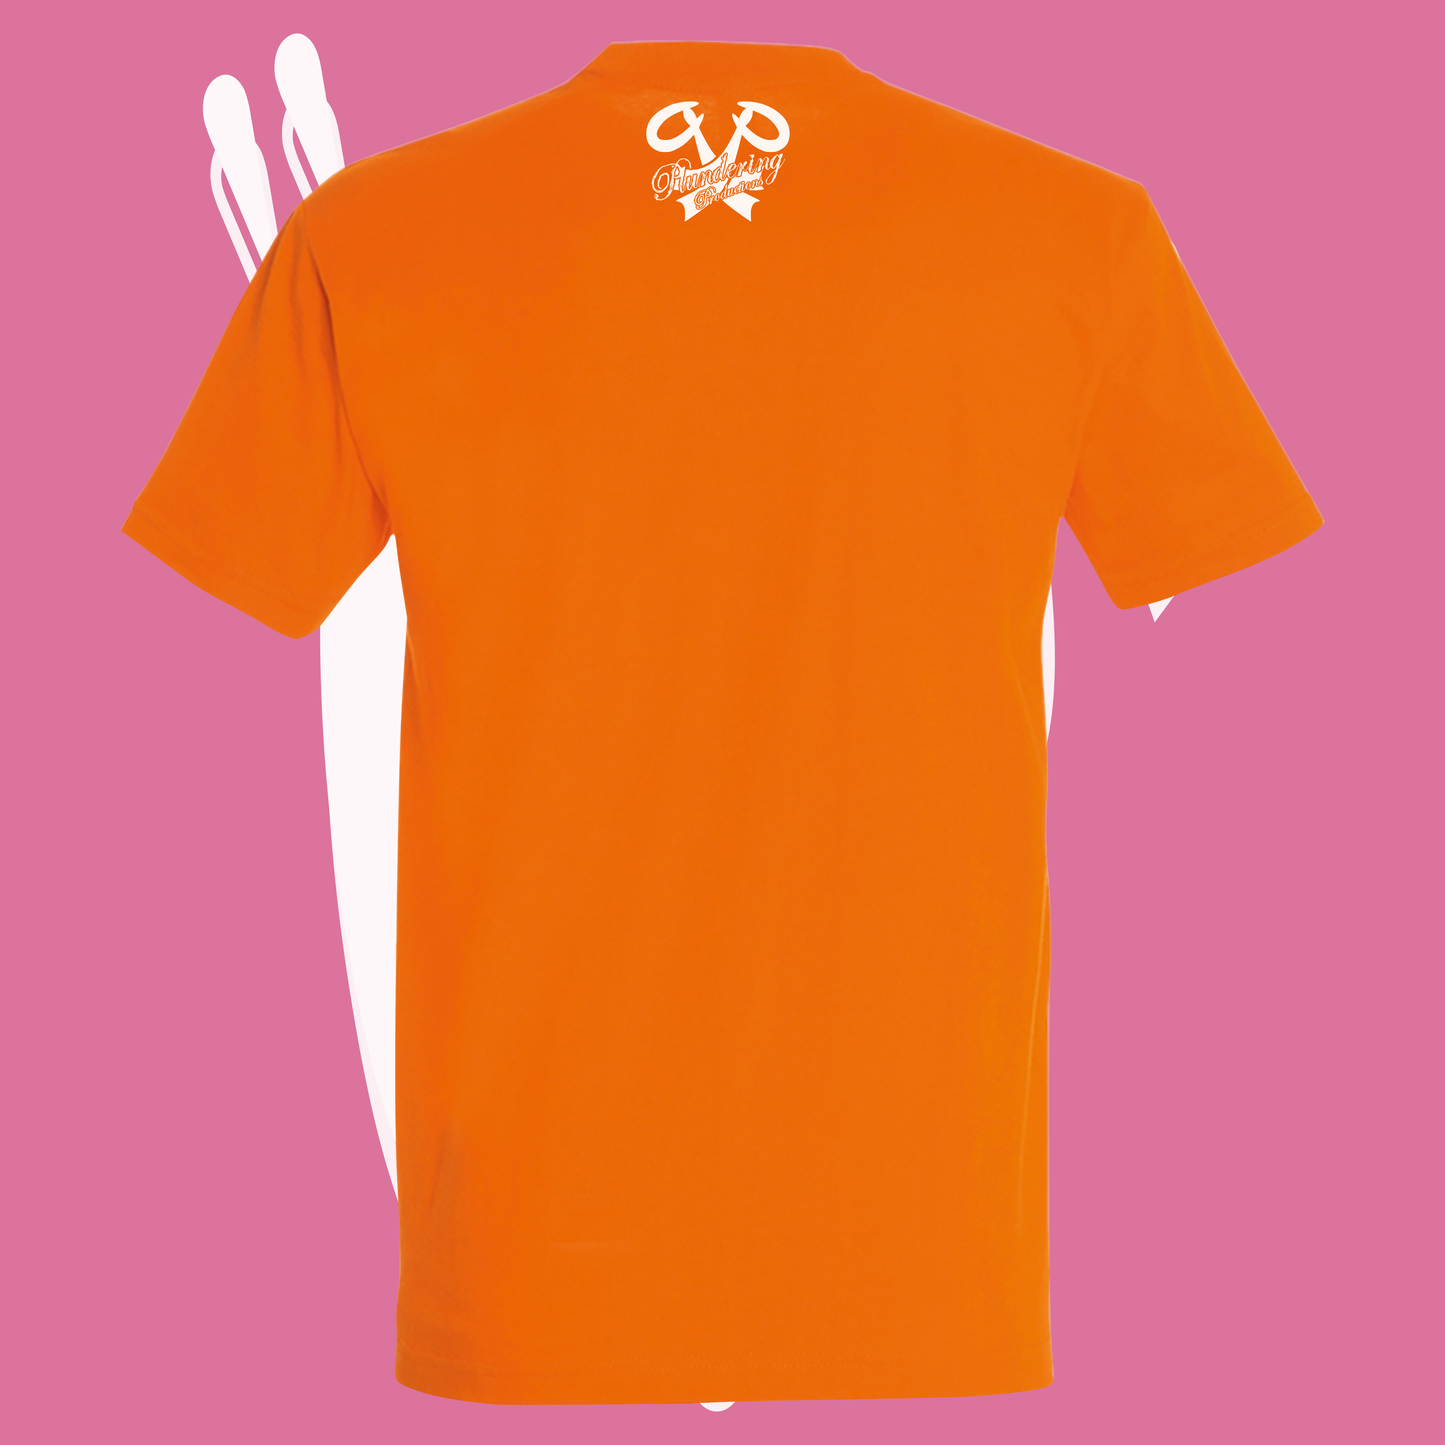 "Oi!" T-shirt orange back